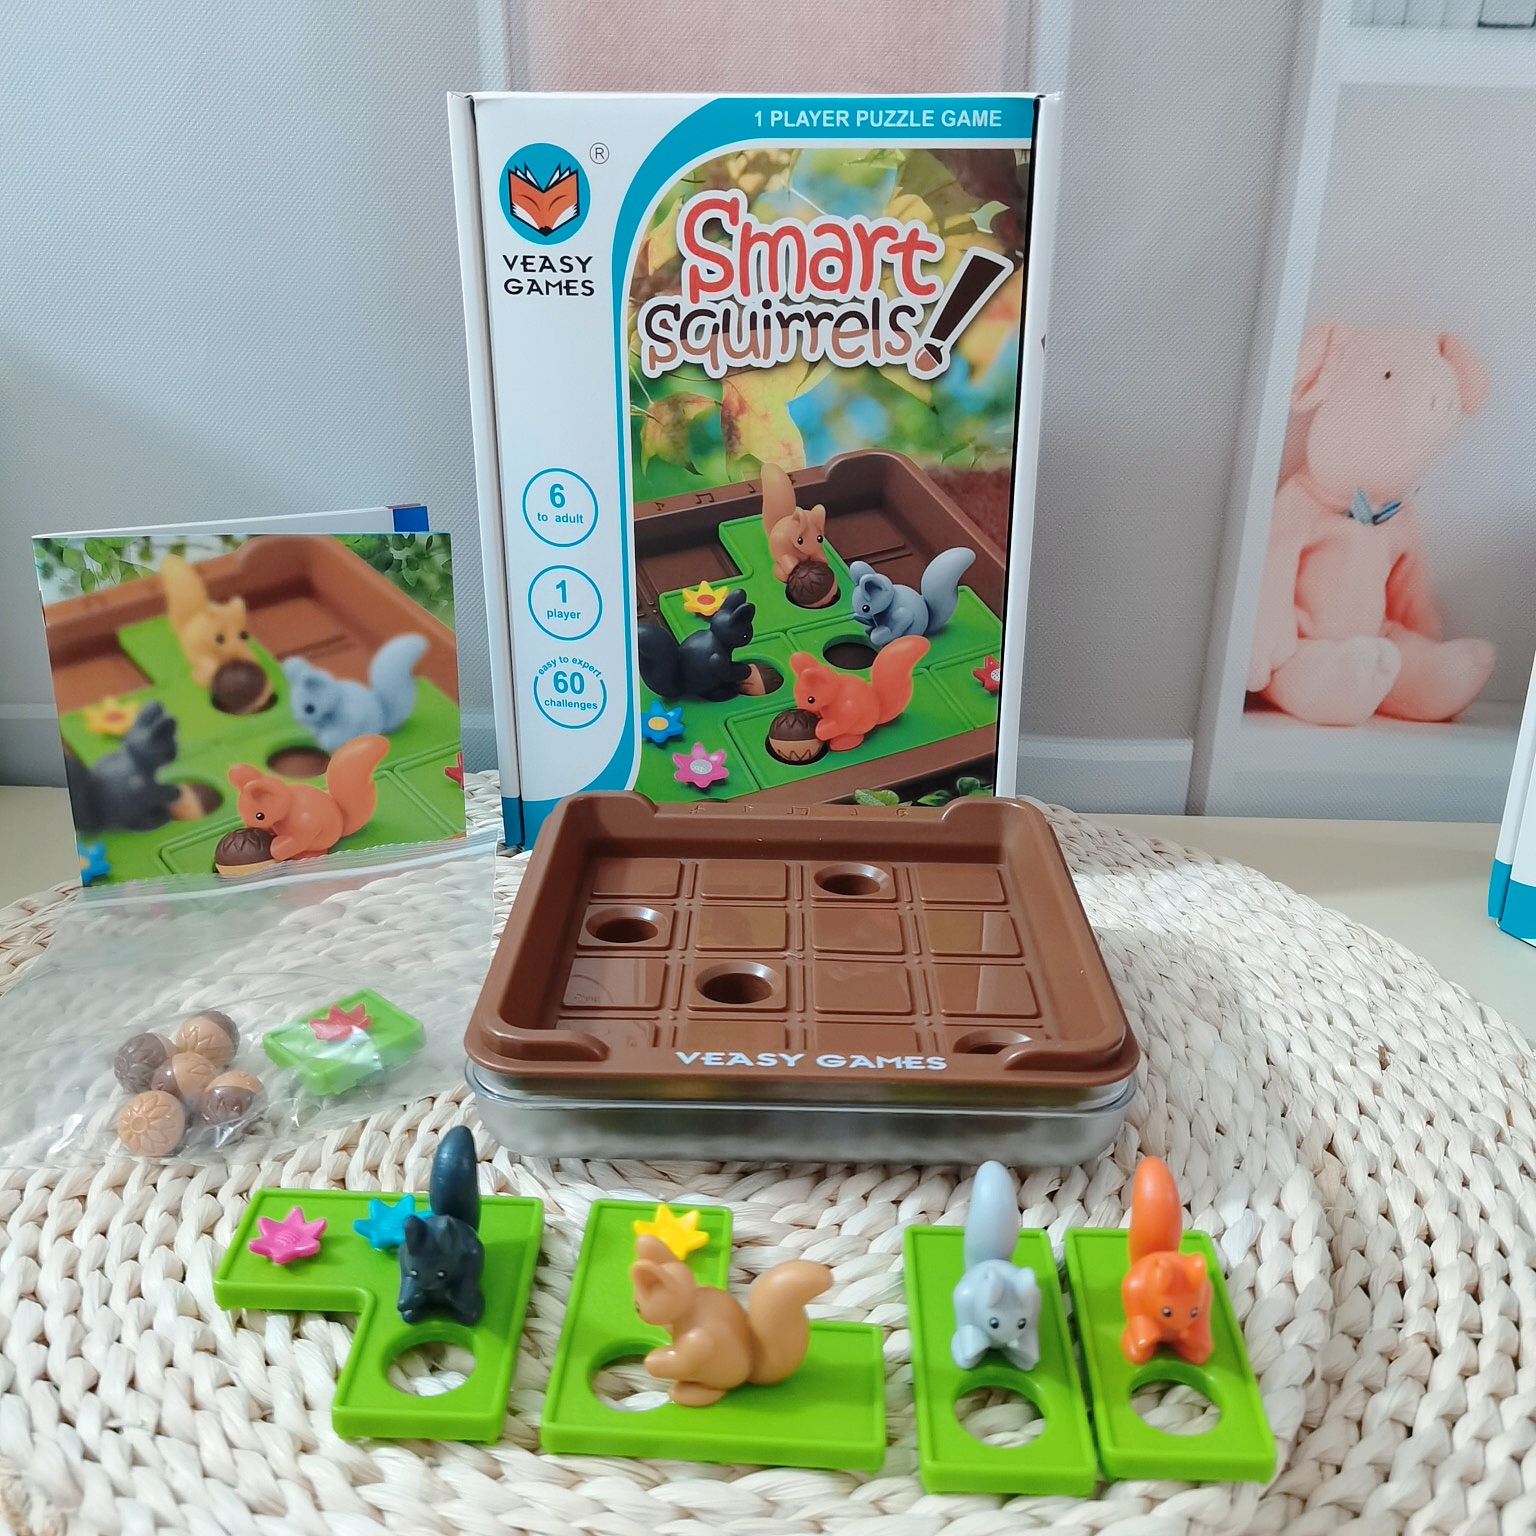 疯狂松鼠儿童桌游专注力训练逻辑思维通过亲子互动开发智力玩具6+